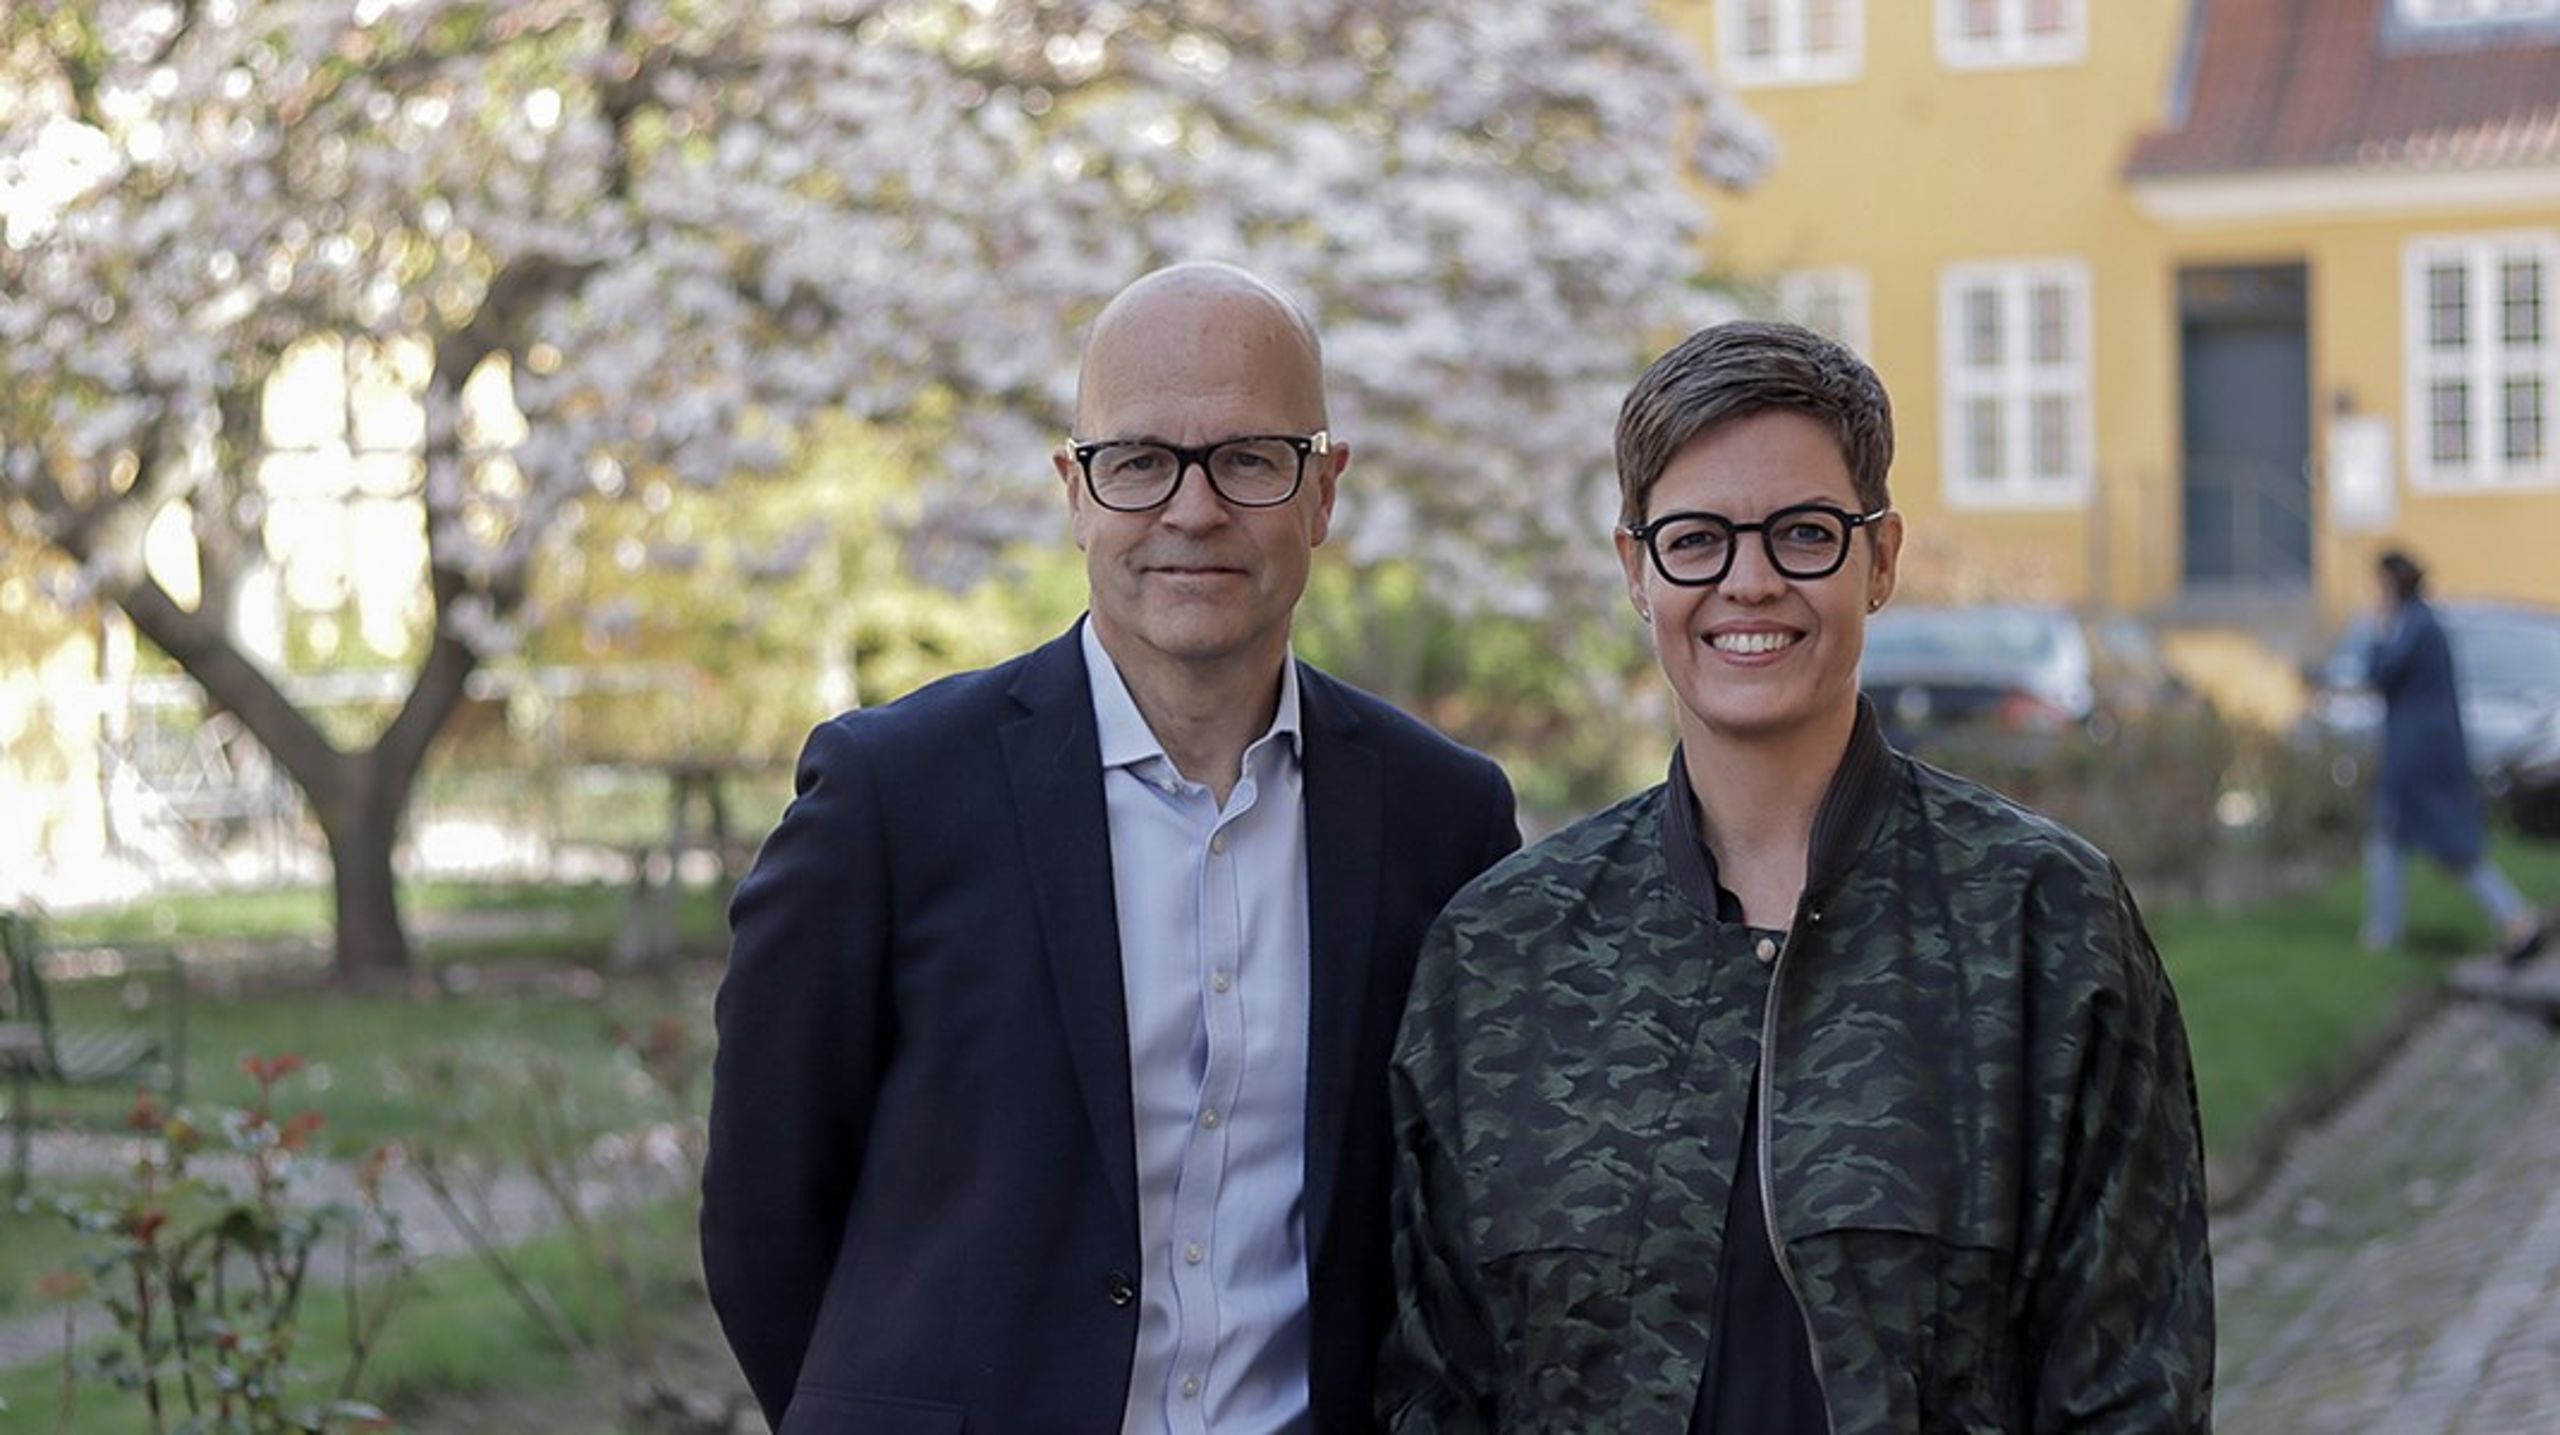 Den nyvalgte bestyrelsesformand Helle Søholt ses sammen med direktør i Bloxhub Torben Klitgaard.&nbsp;&nbsp;